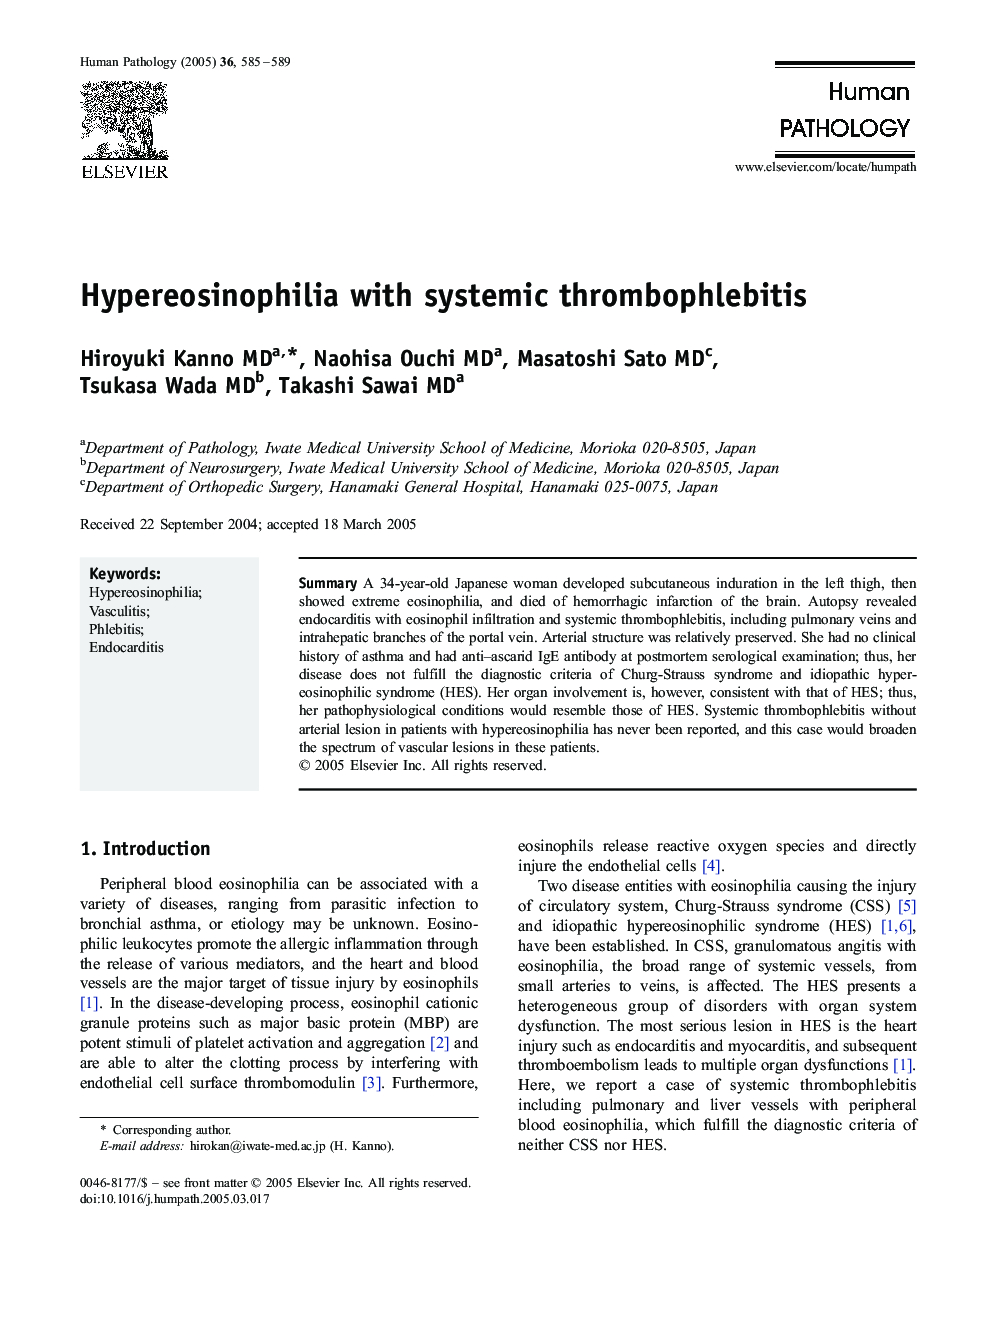 Hypereosinophilia with systemic thrombophlebitis